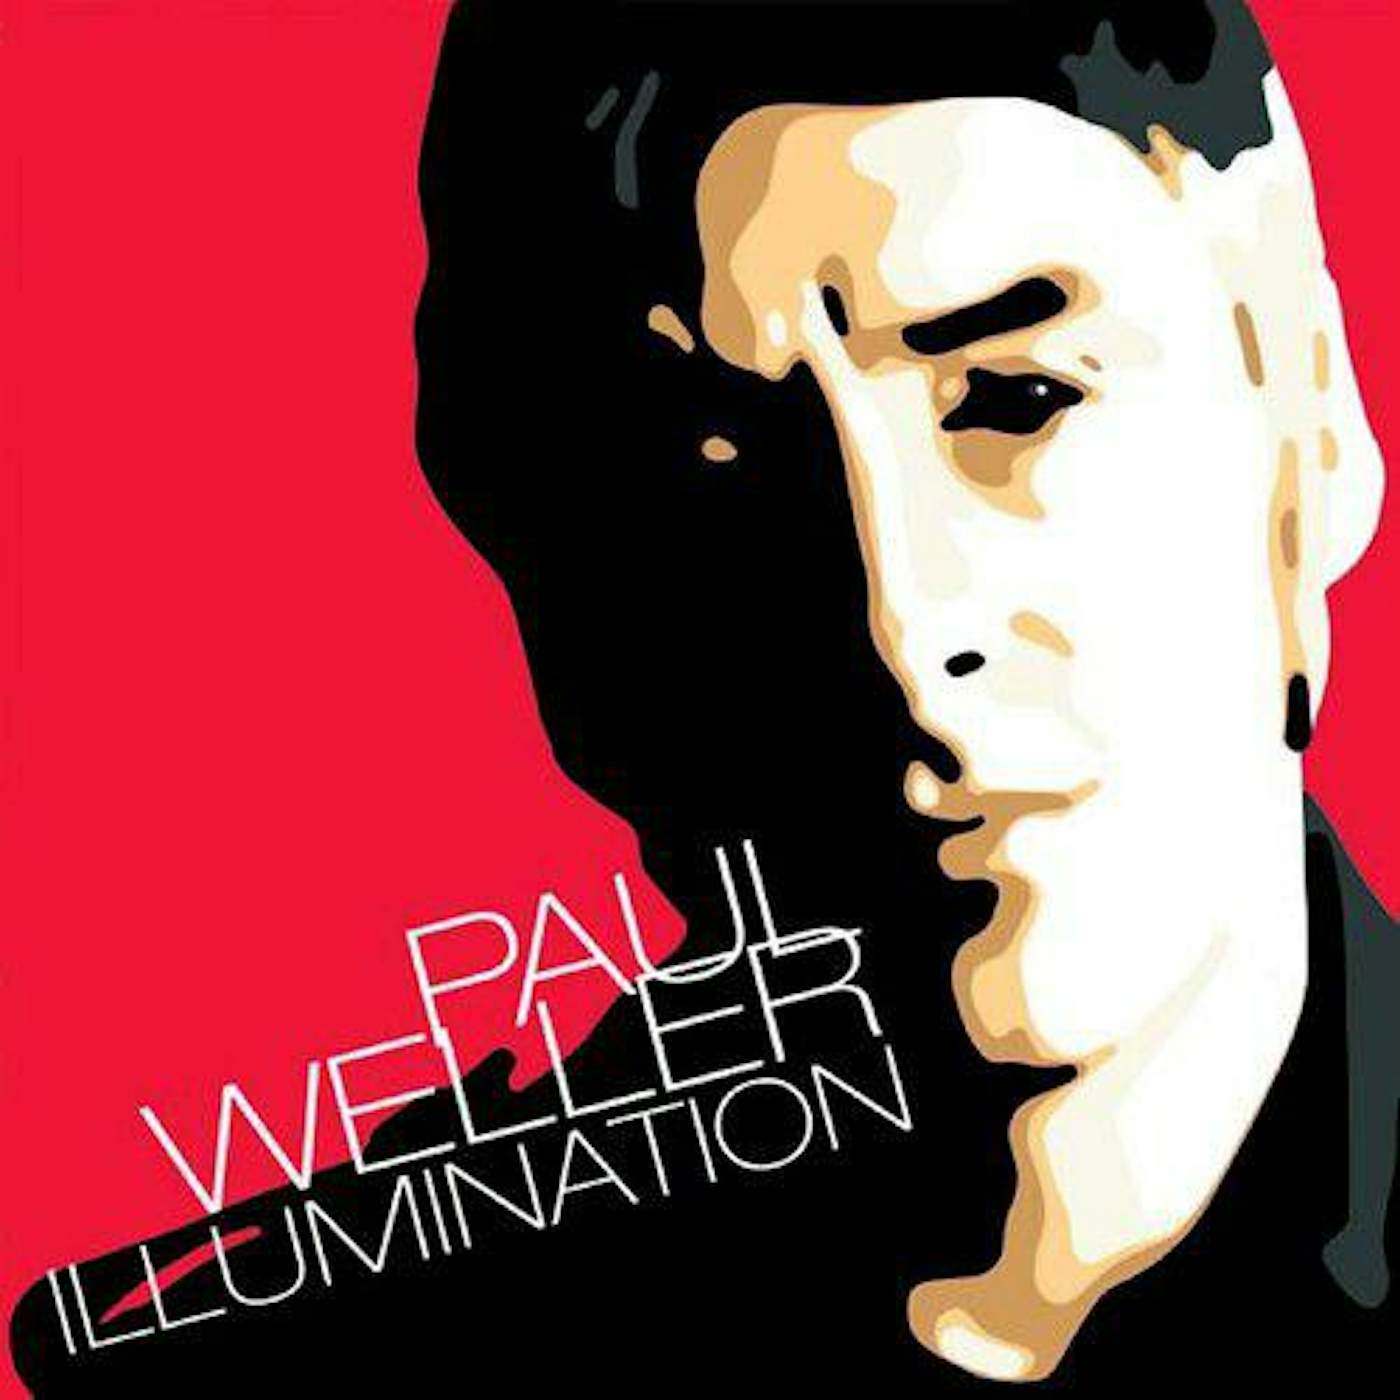 Paul Weller Illumination Vinyl Record